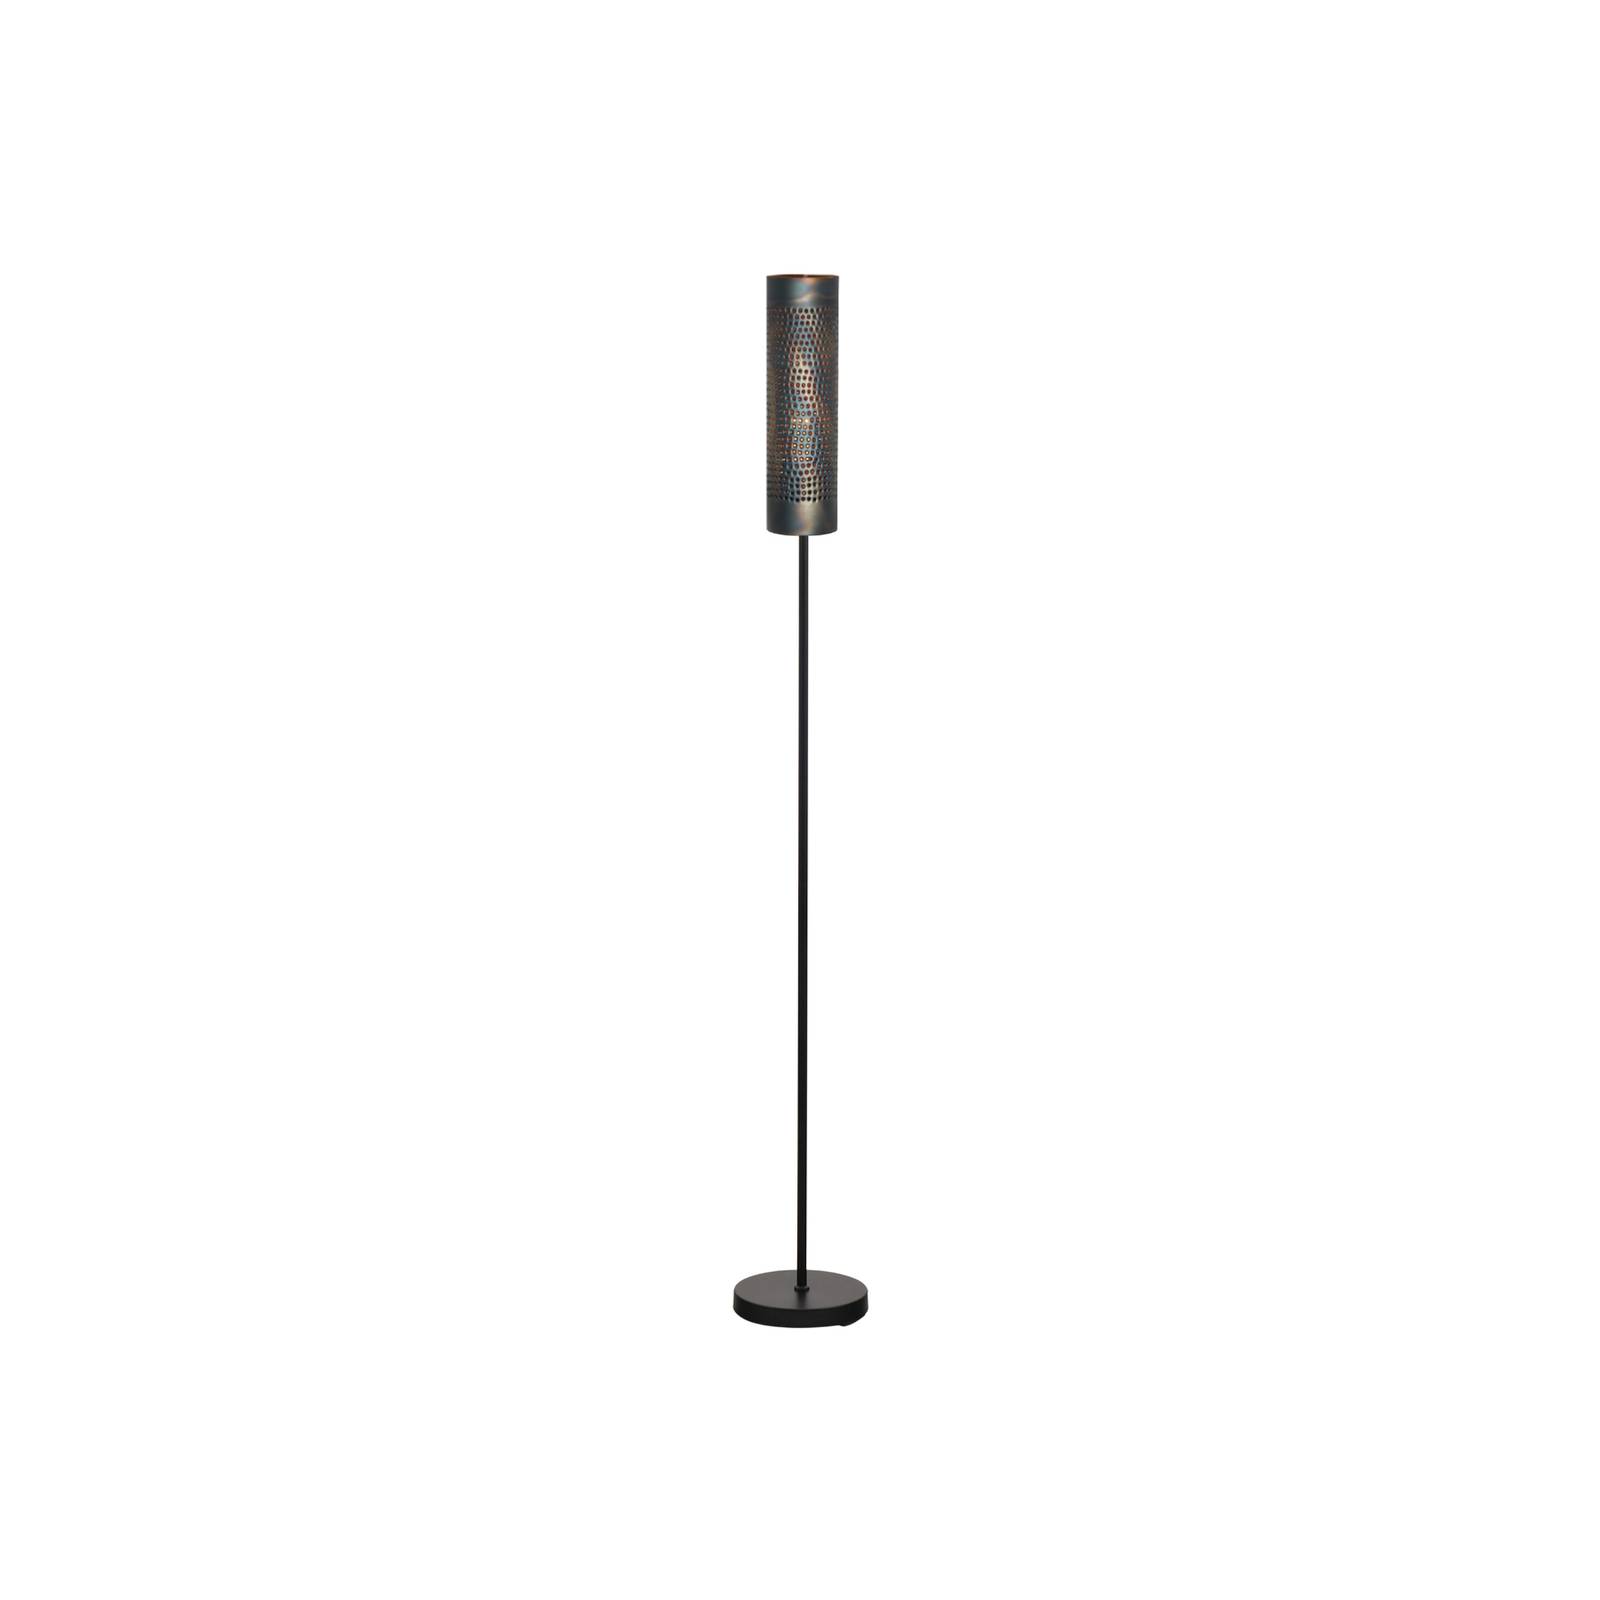 Freelight forato állólámpa, magasság 174 cm, barna, fém